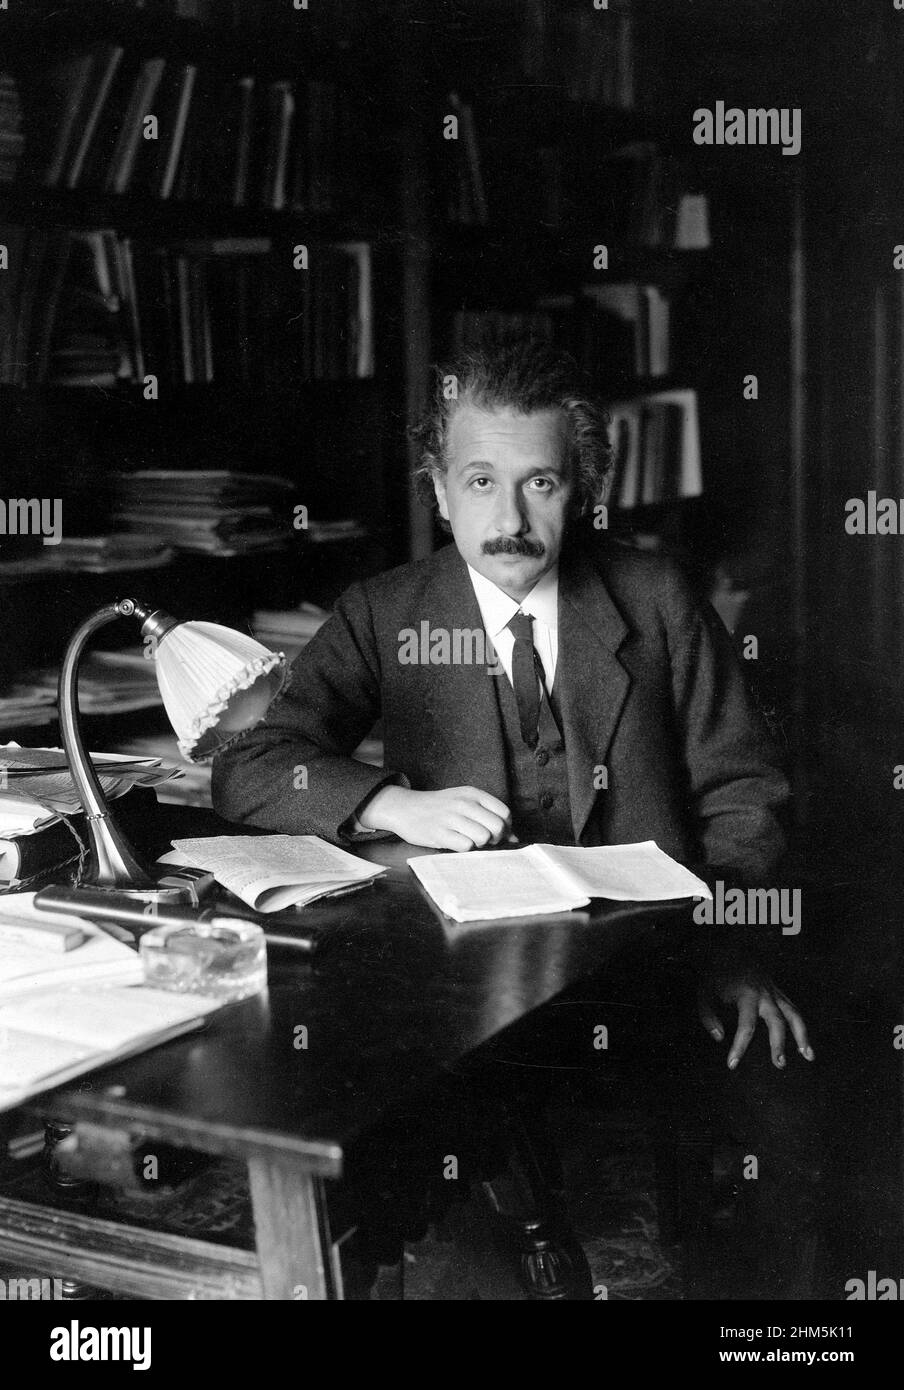 Fotografia di Albert Einstein nel suo ufficio all'Università di Berlino, 1920. Fotografo sconosciuto. Foto Stock